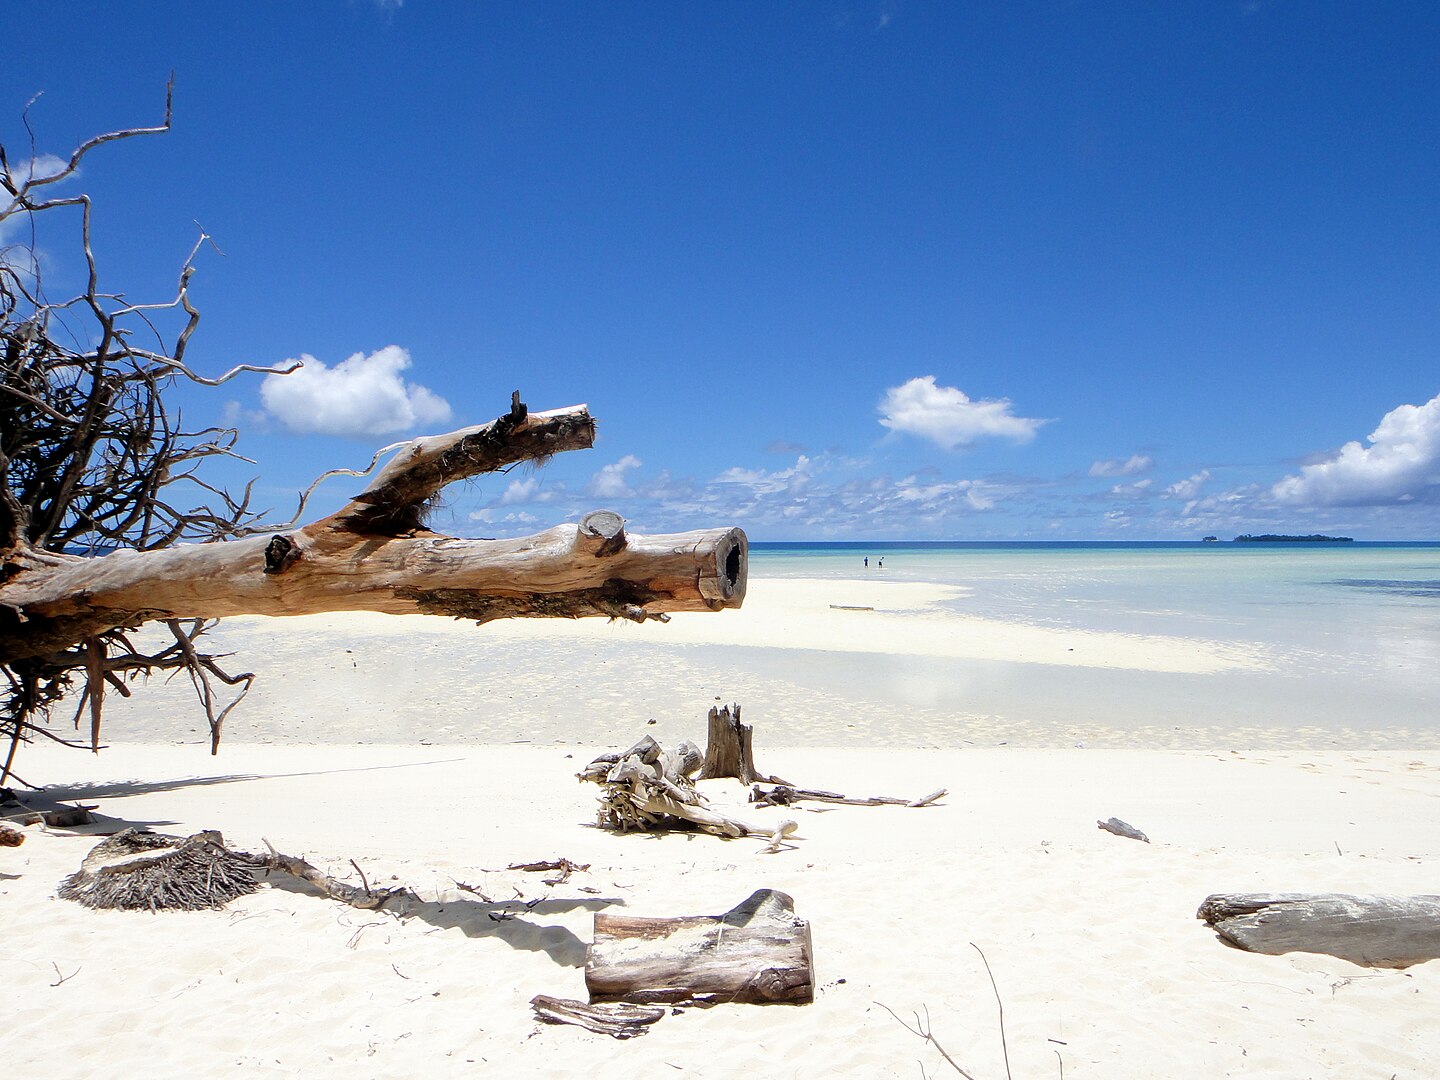 Palau Beach